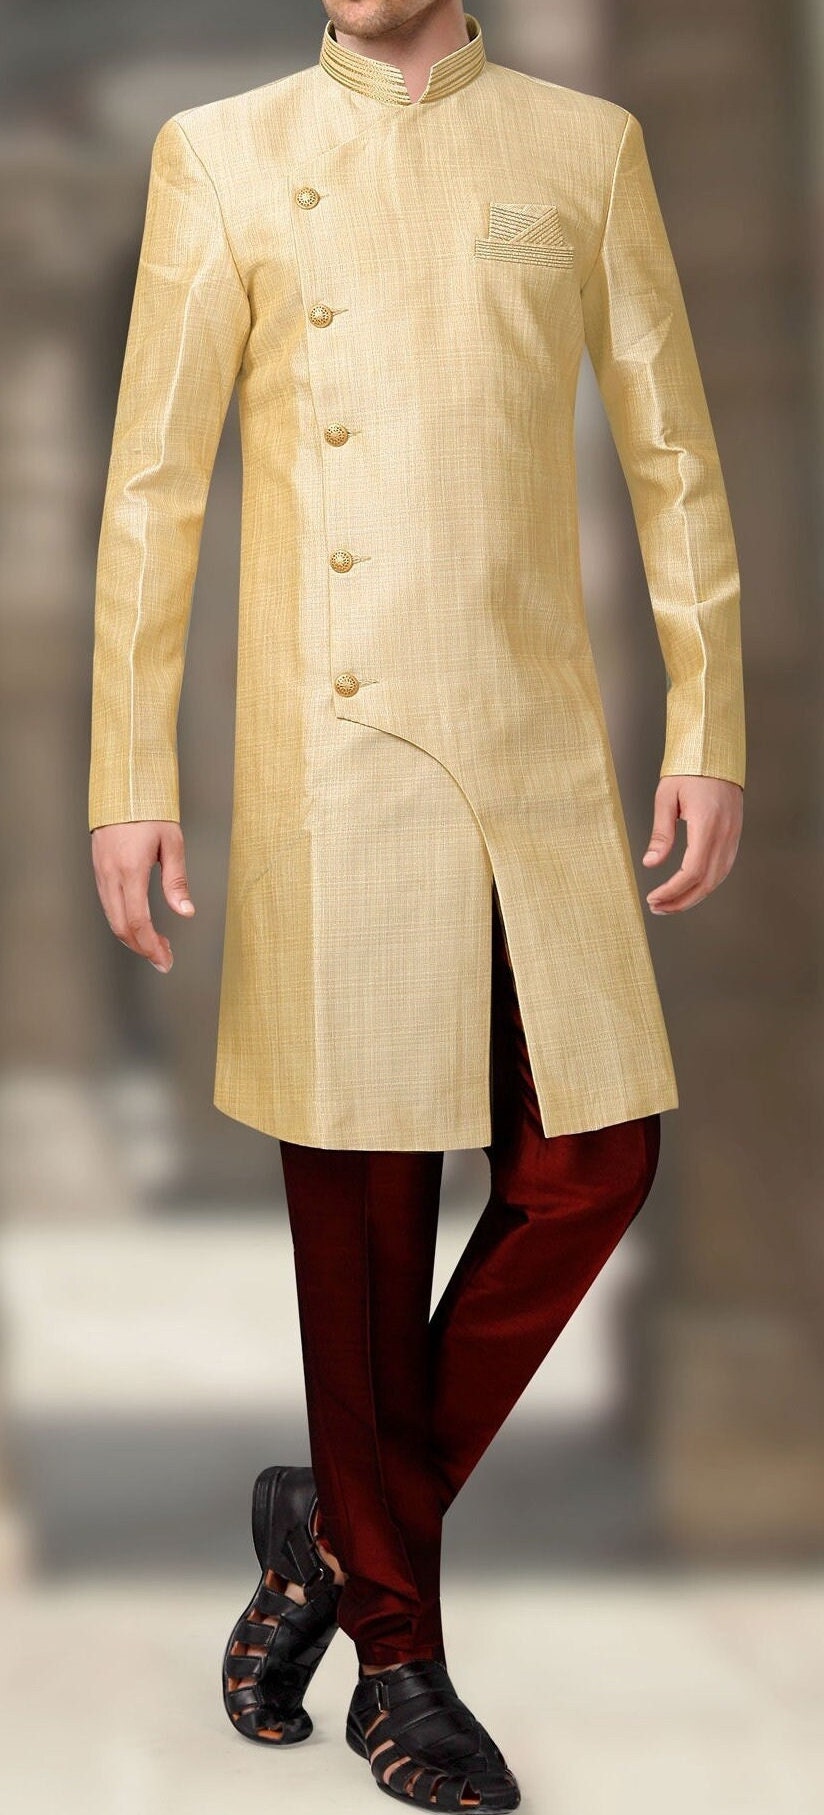 Wedding Sherwani Groom Outfit Nawabi Suit Jodhapuri Suit Groomsmen Outfit  Indian Pakistani Wedding Designer Sherwani - Etsy